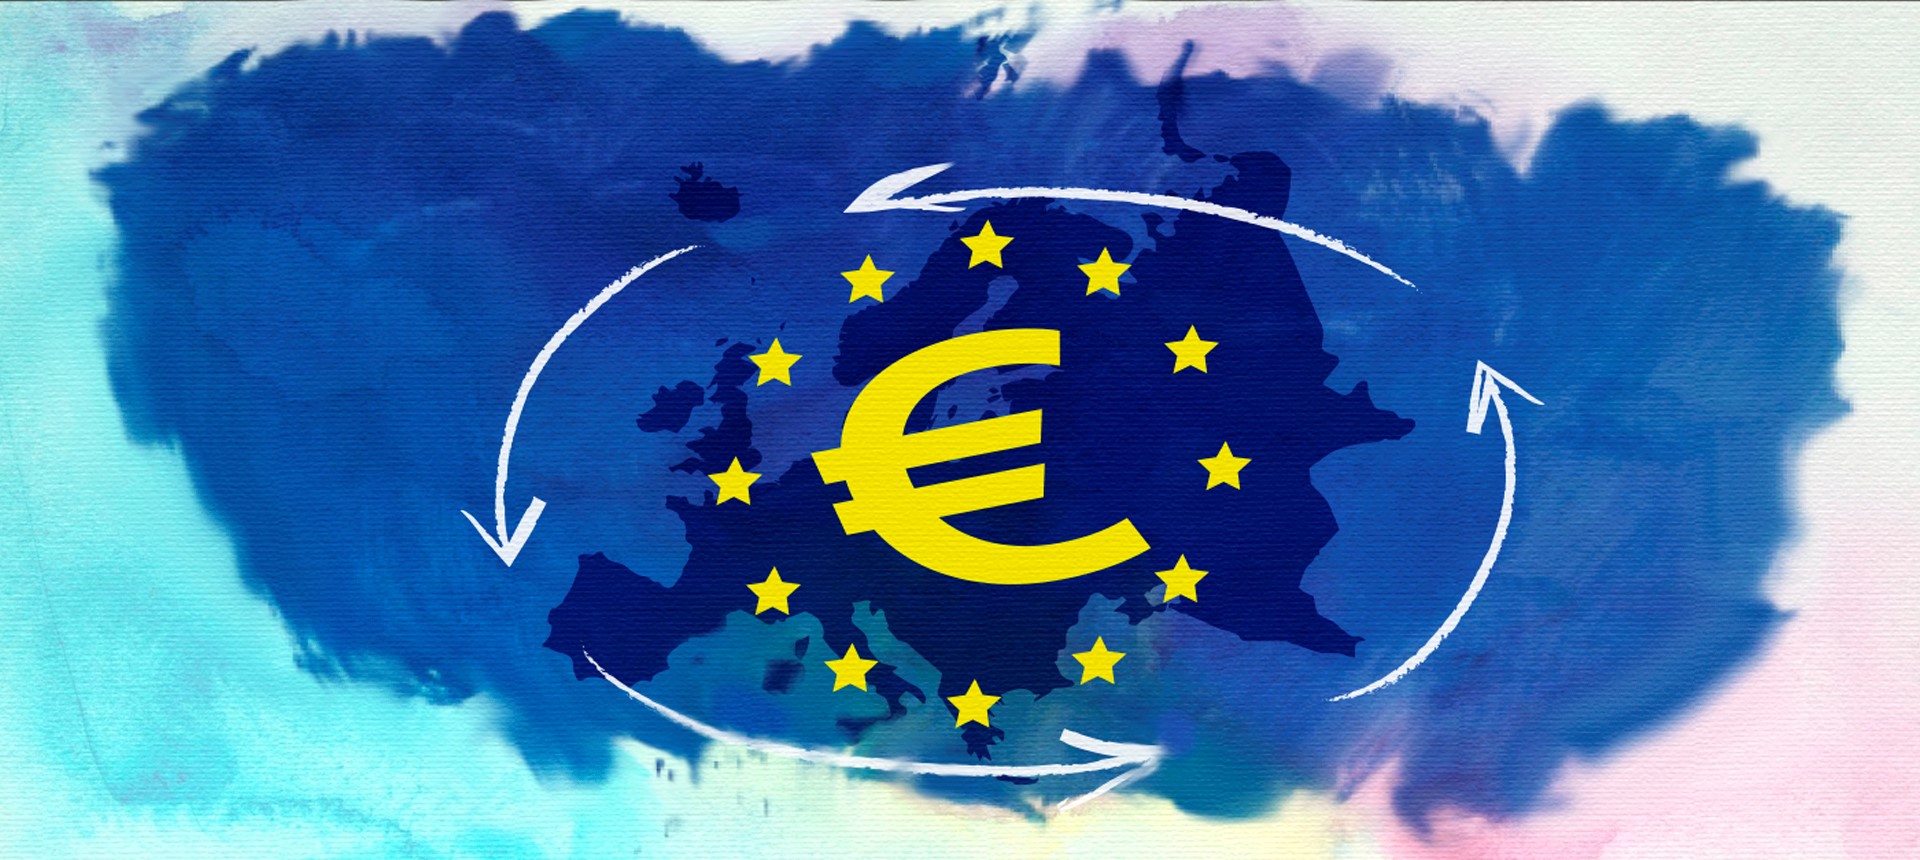 Transferencias Internacionales en Euros